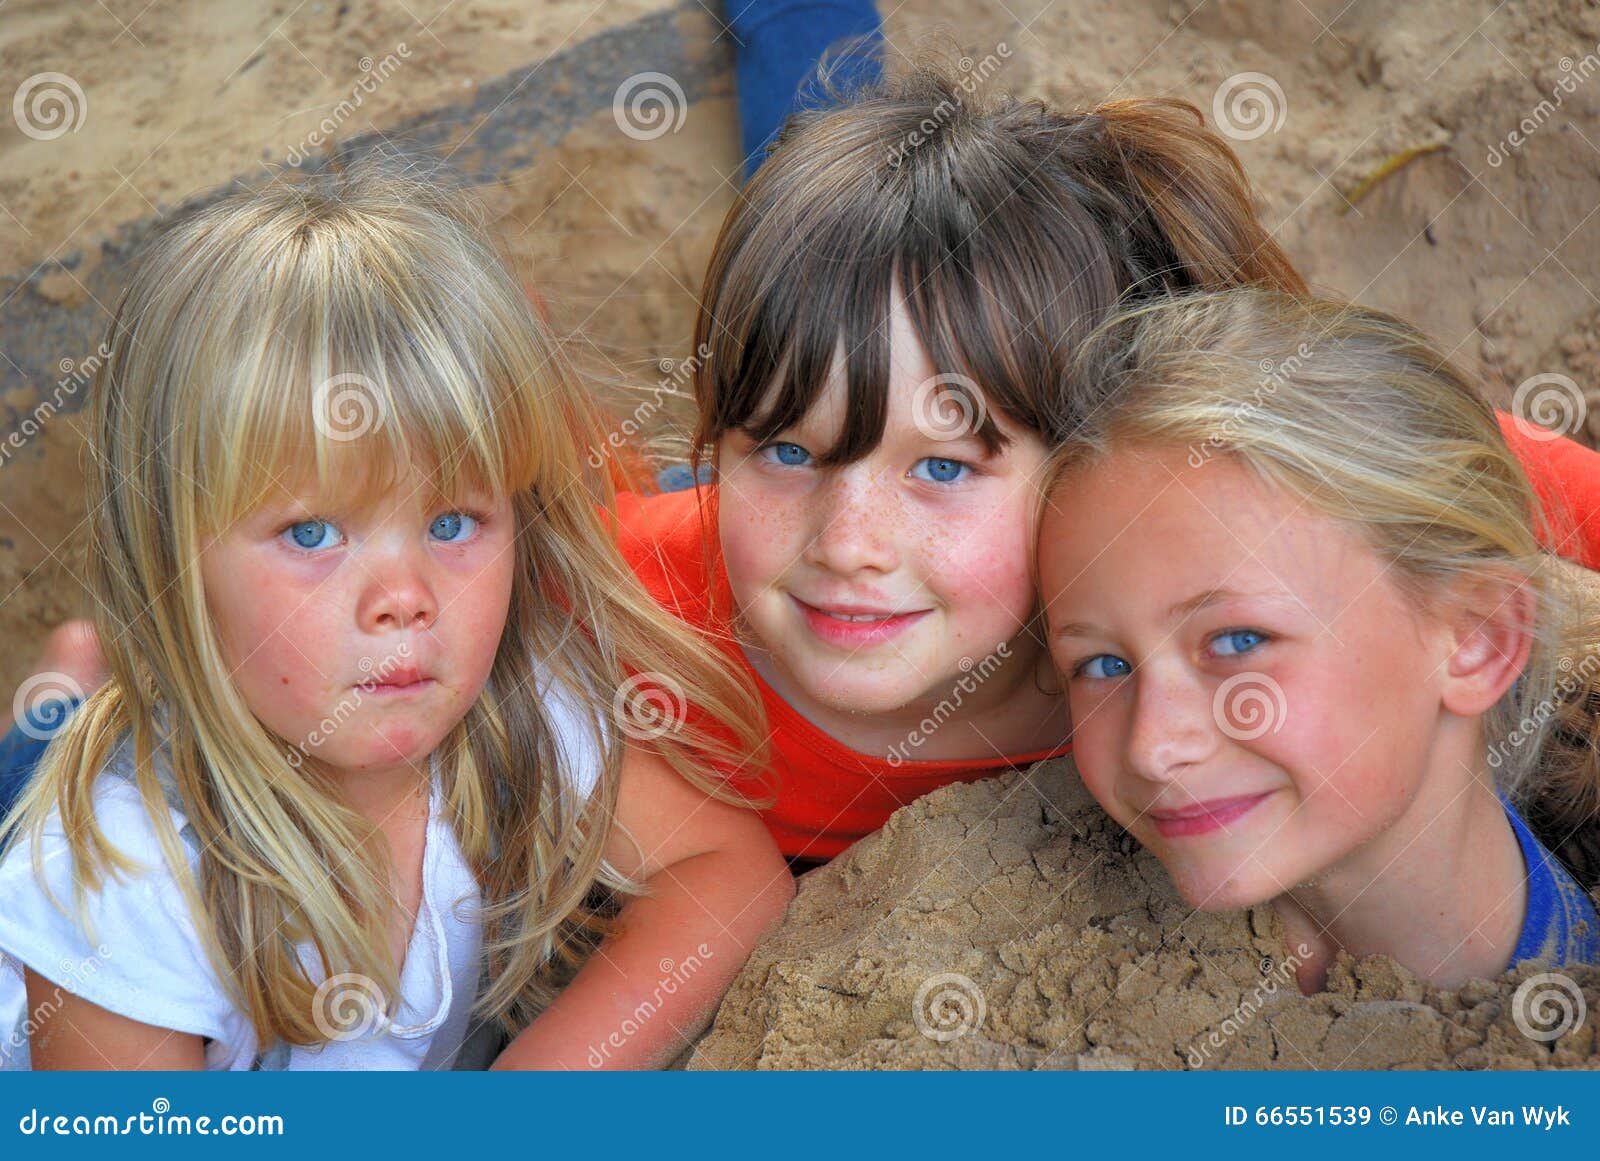 sandpit friends